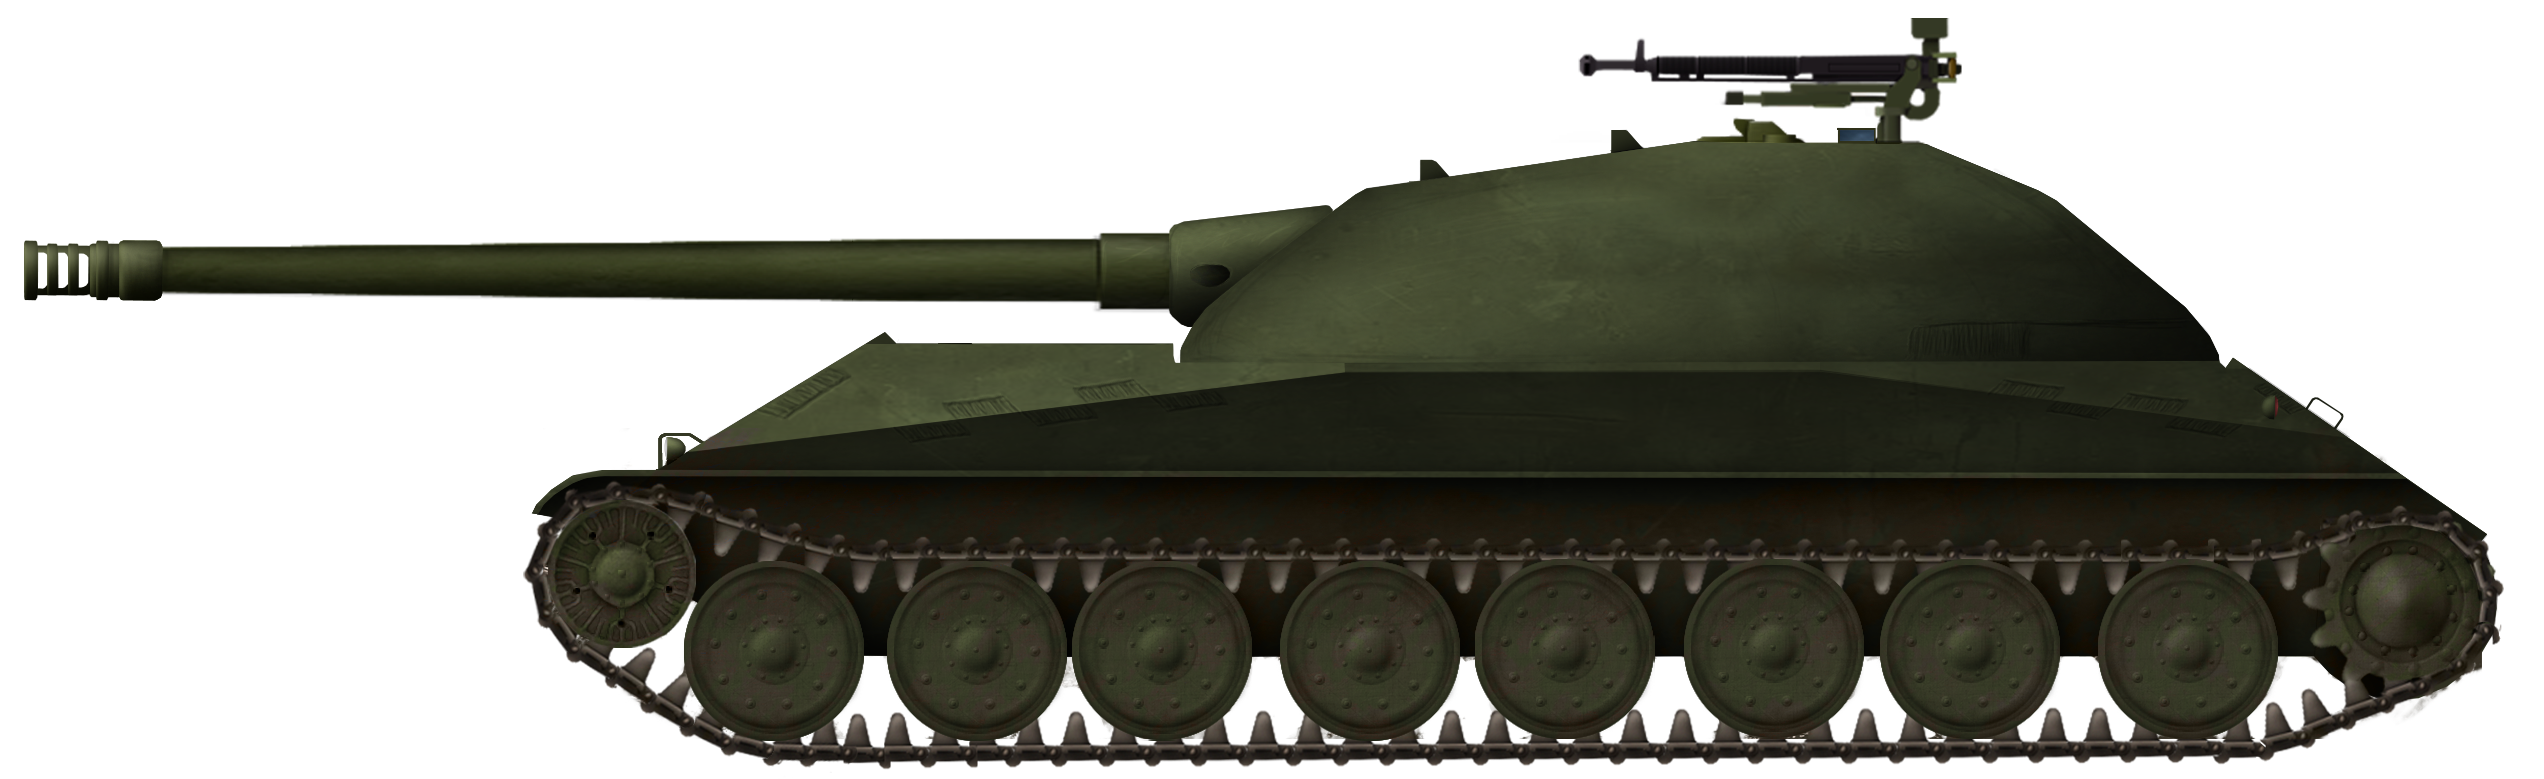 Czechoslovak Post-War AA Gun Tank Projects – Part 2